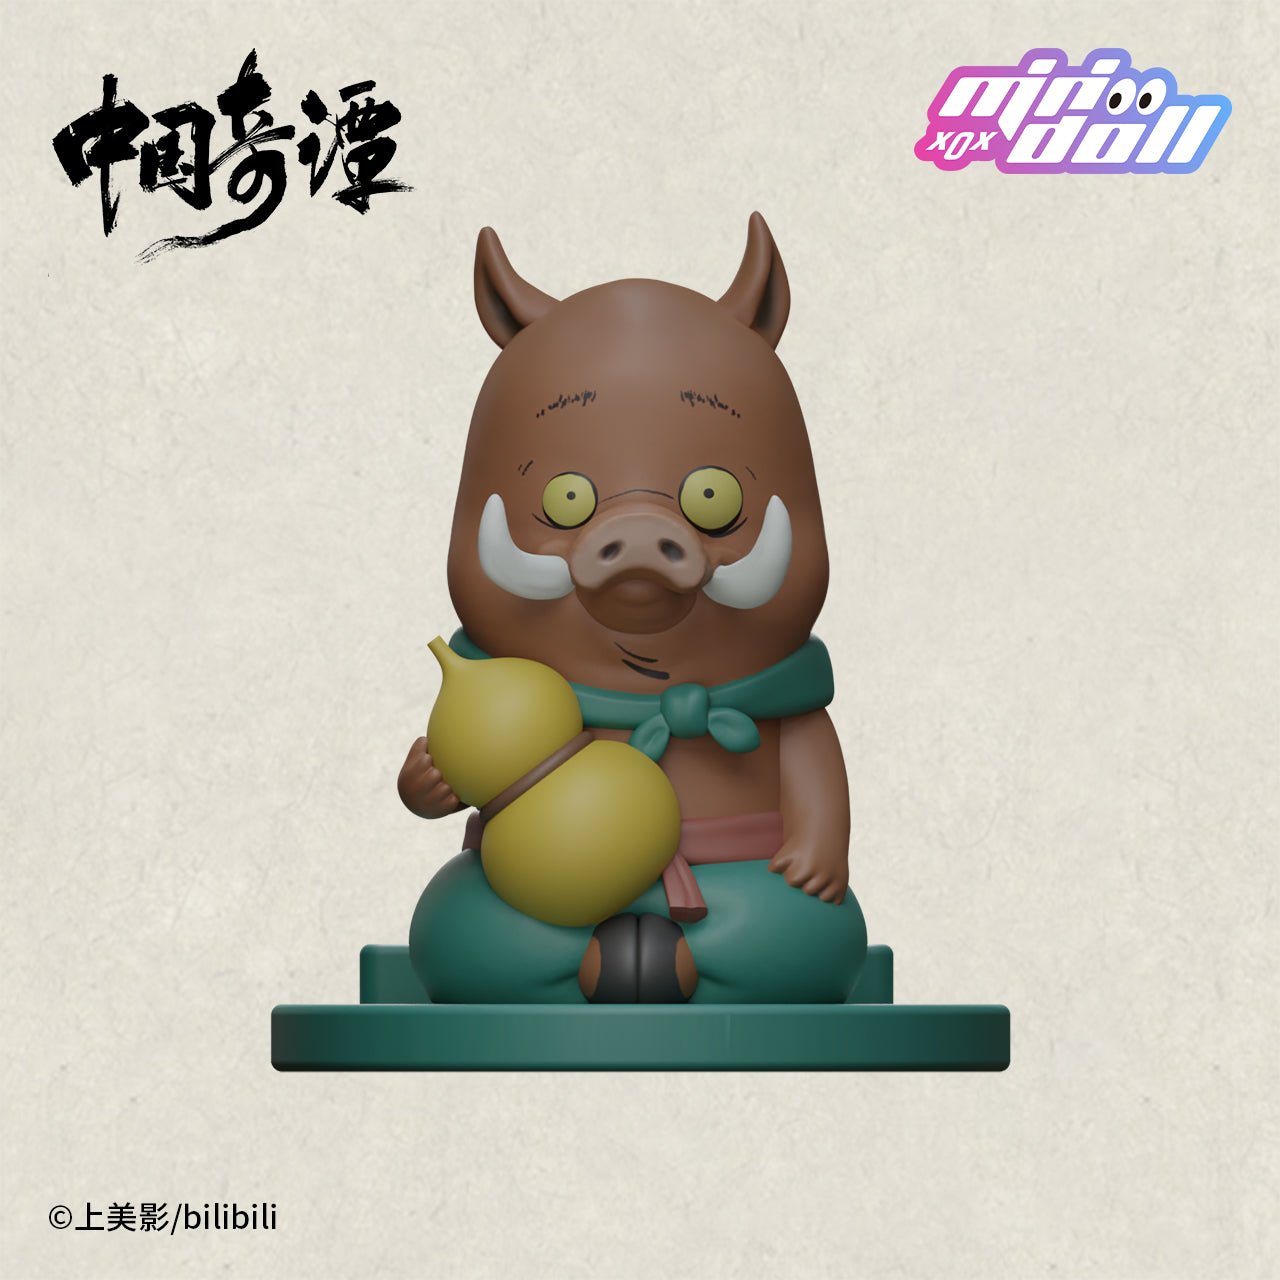 Chinese Folktales Nobody Piglet Demon Mobile Phone Holder 11684:399923